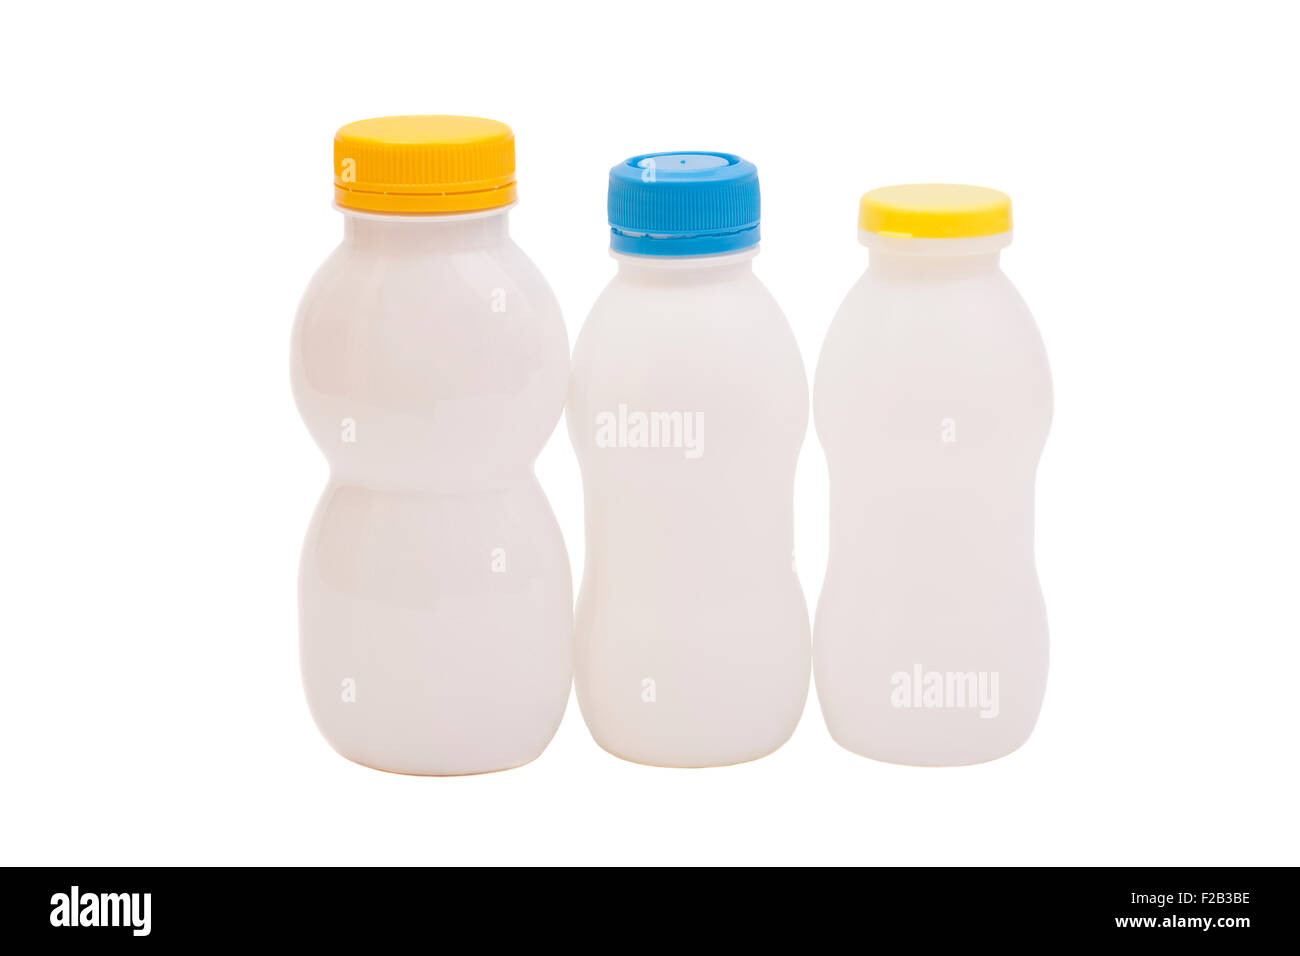 Les bouteilles de boisson au yogourt biotiques isolé sur fond blanc Banque D'Images